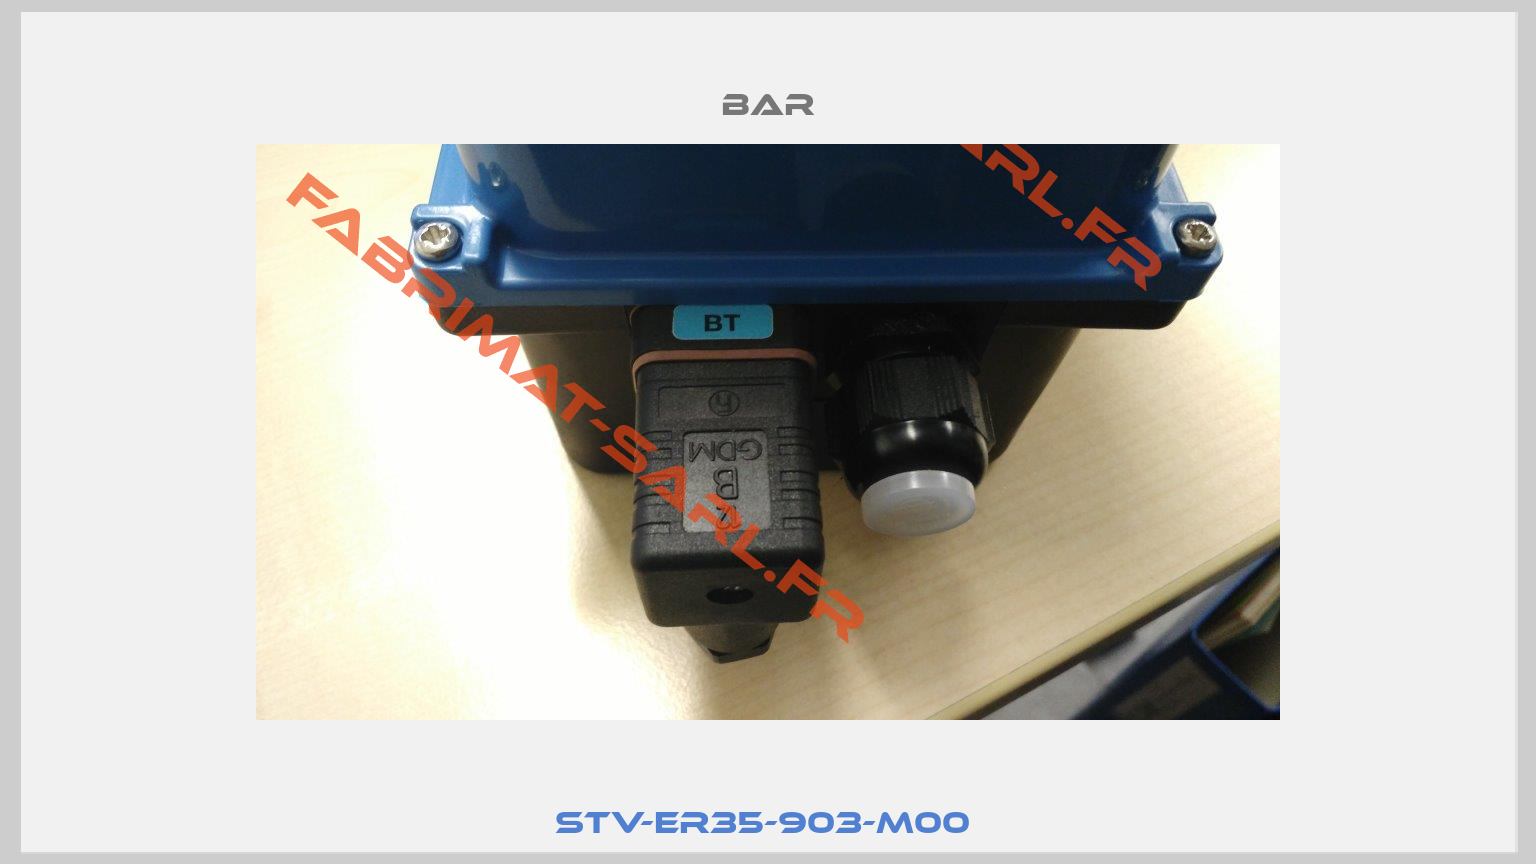 STV-ER35-903-M00 -1